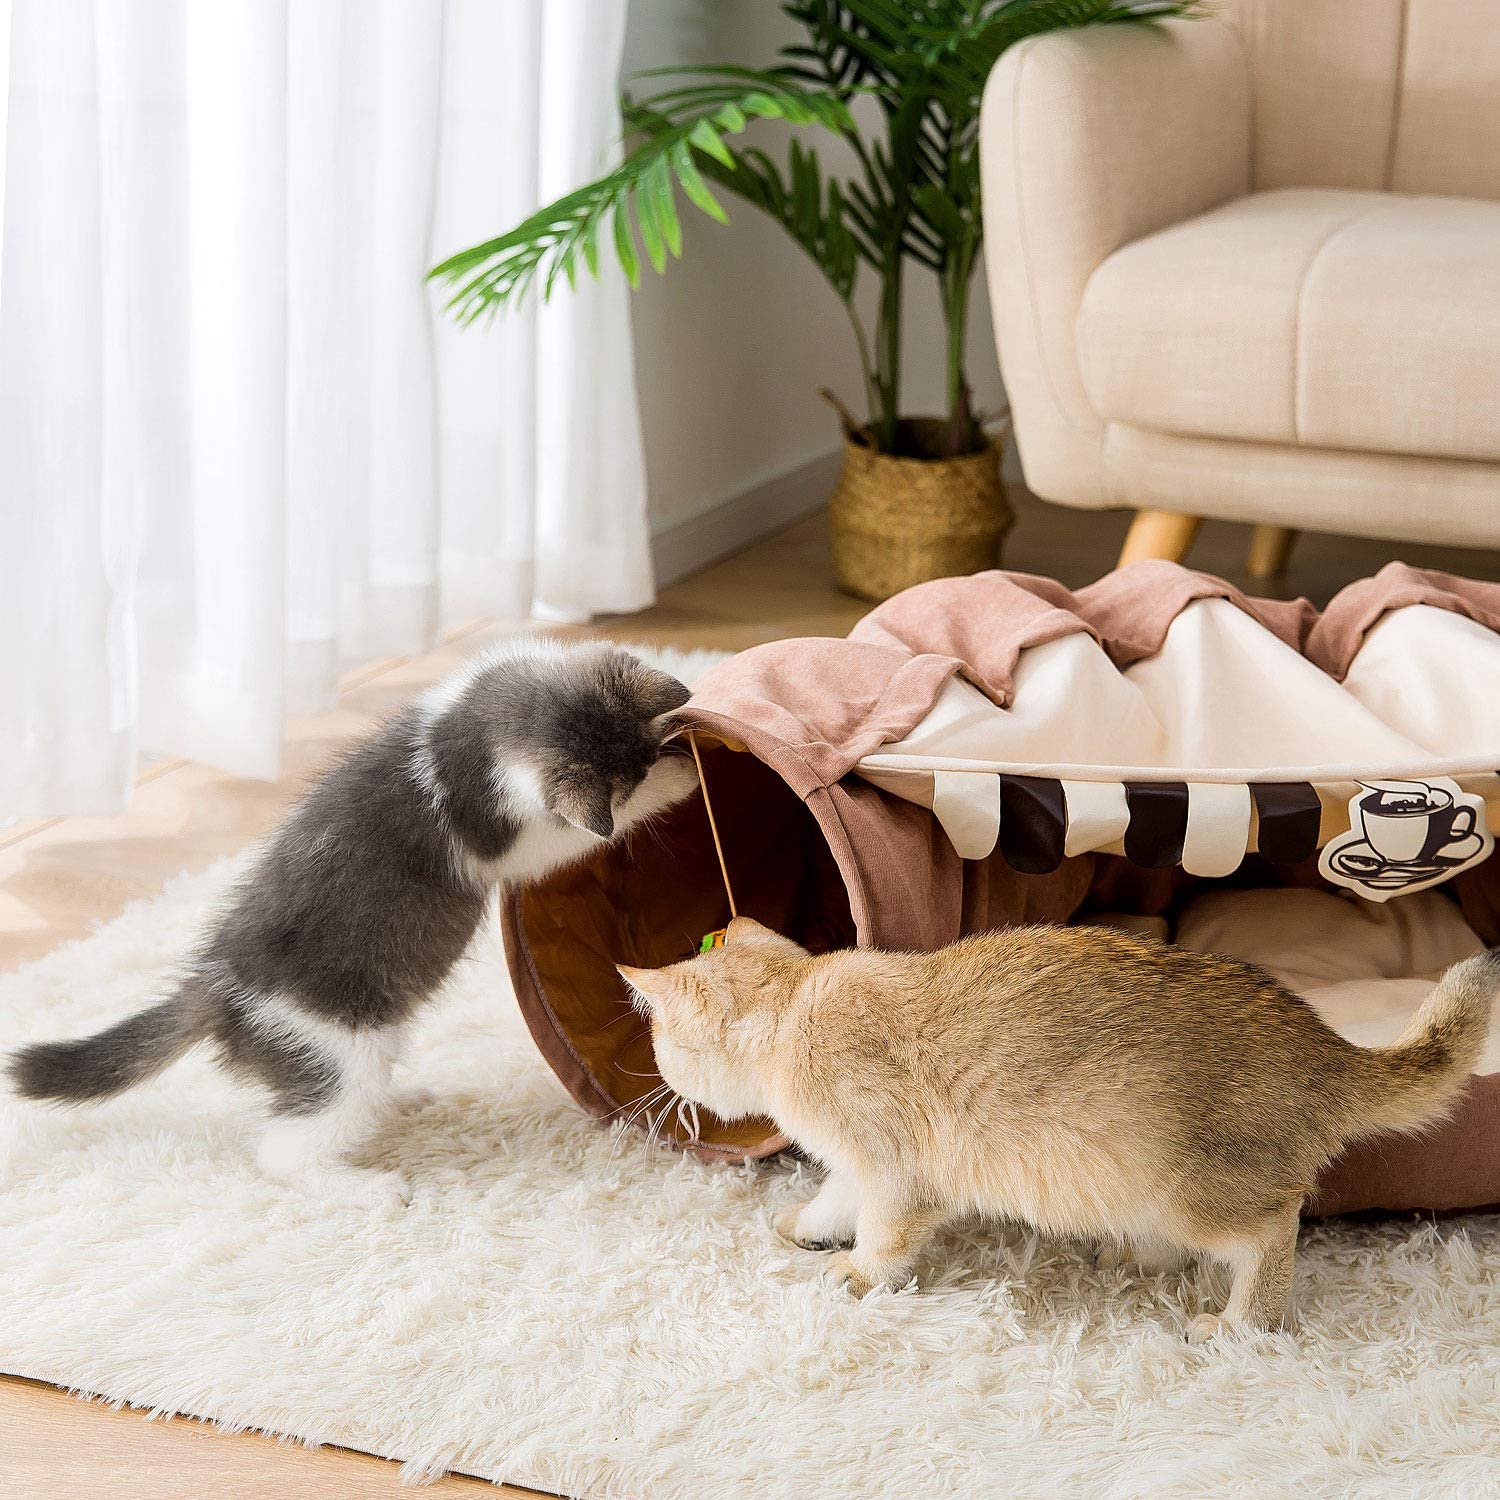 تخت گربه میکروفیبر بادوام بدون اینکه نرمی را برای راحتی دلخواه از بین ببرد، استحکام را به دست می آورد. منطقه خواب کرکی همراه با چاشنی کامل باعث ایجاد پفکی در تمام طول سال می شود